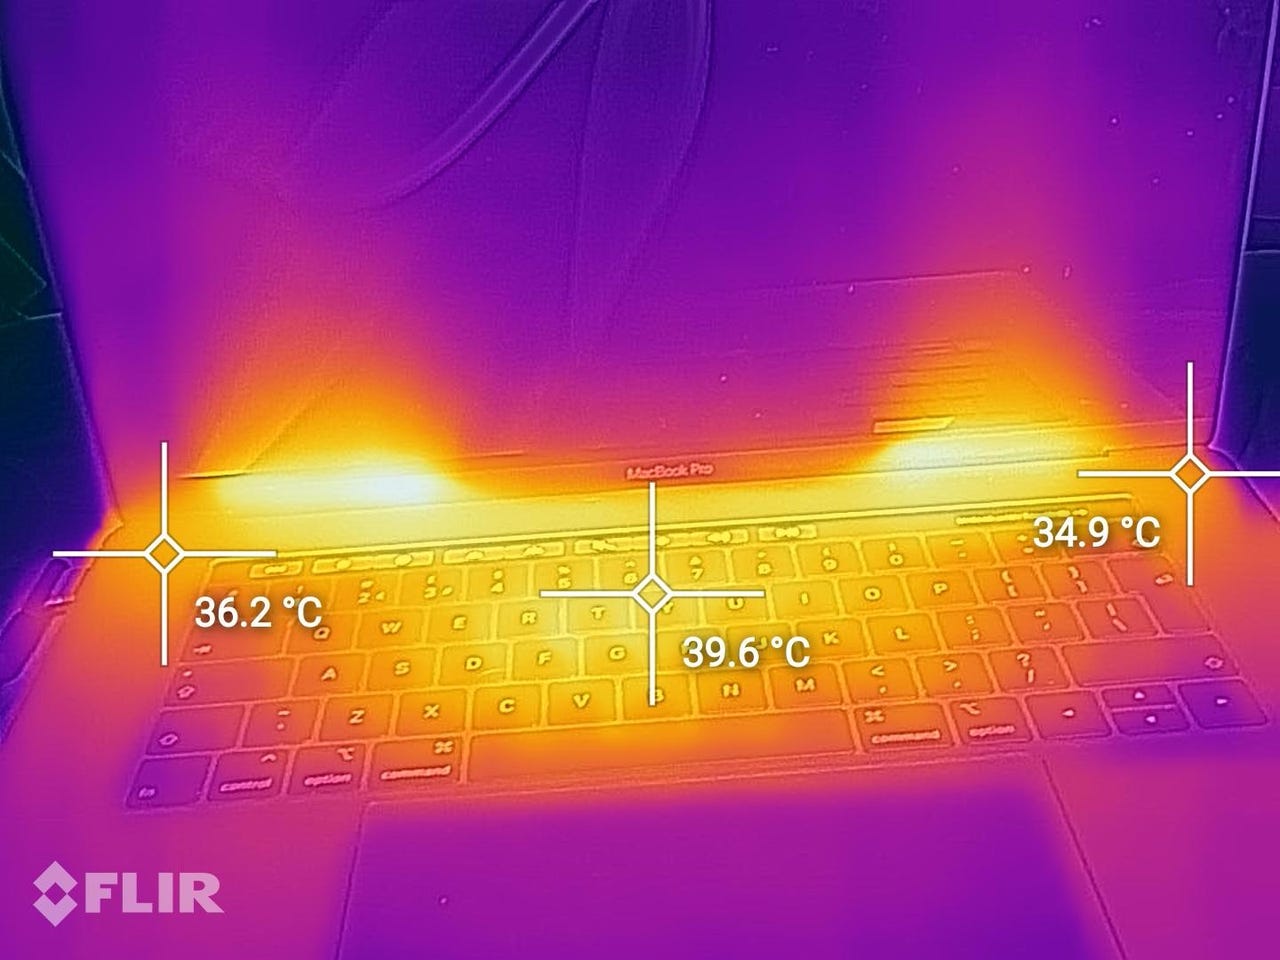 Temperature analysis using FLIR thermal camera. 